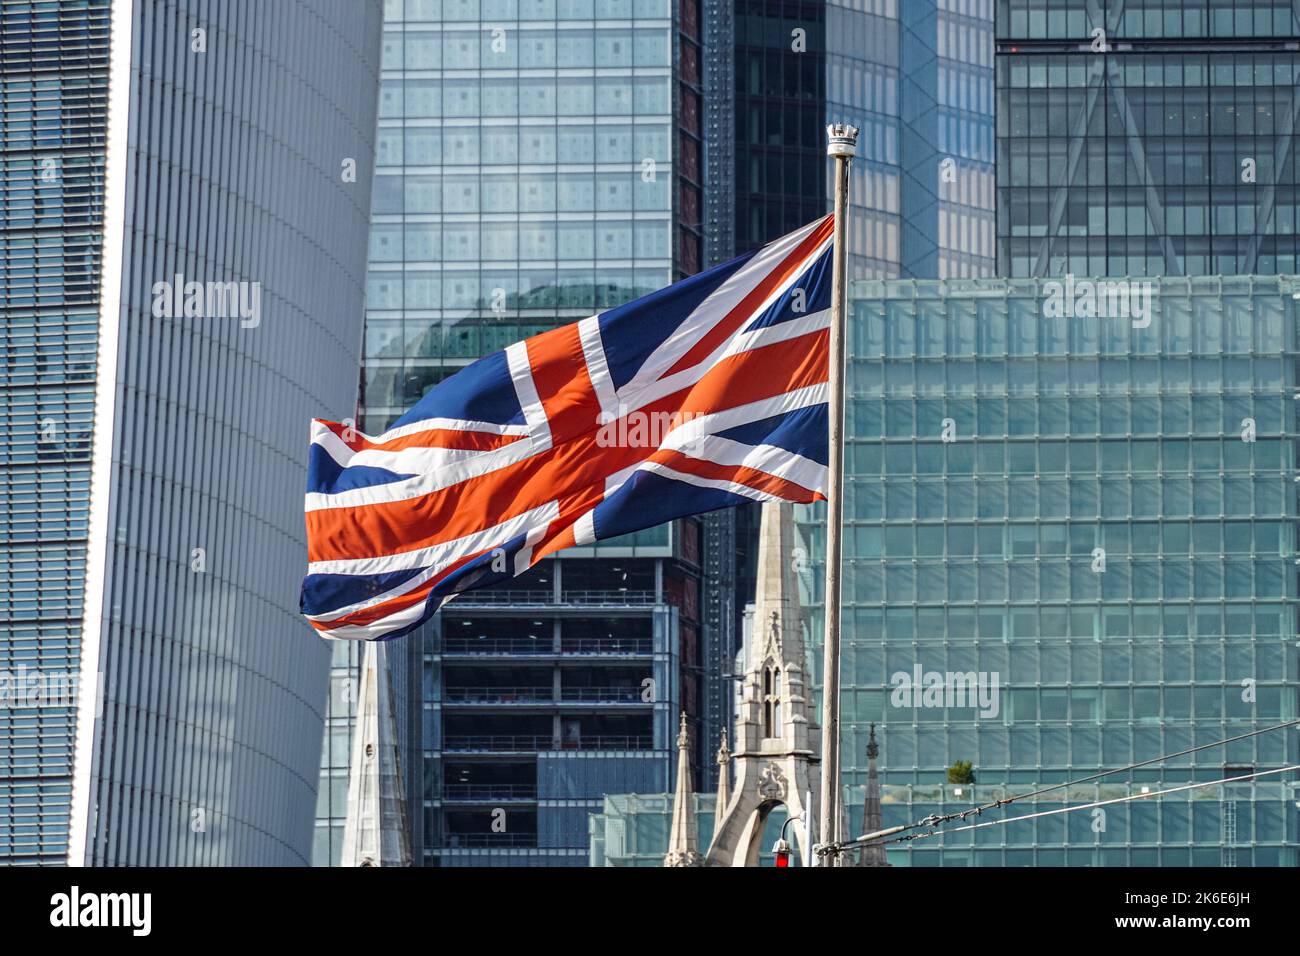 Drapeau Union Jack devant les gratte-ciels de la City of London, Londres Angleterre Royaume-Uni Banque D'Images